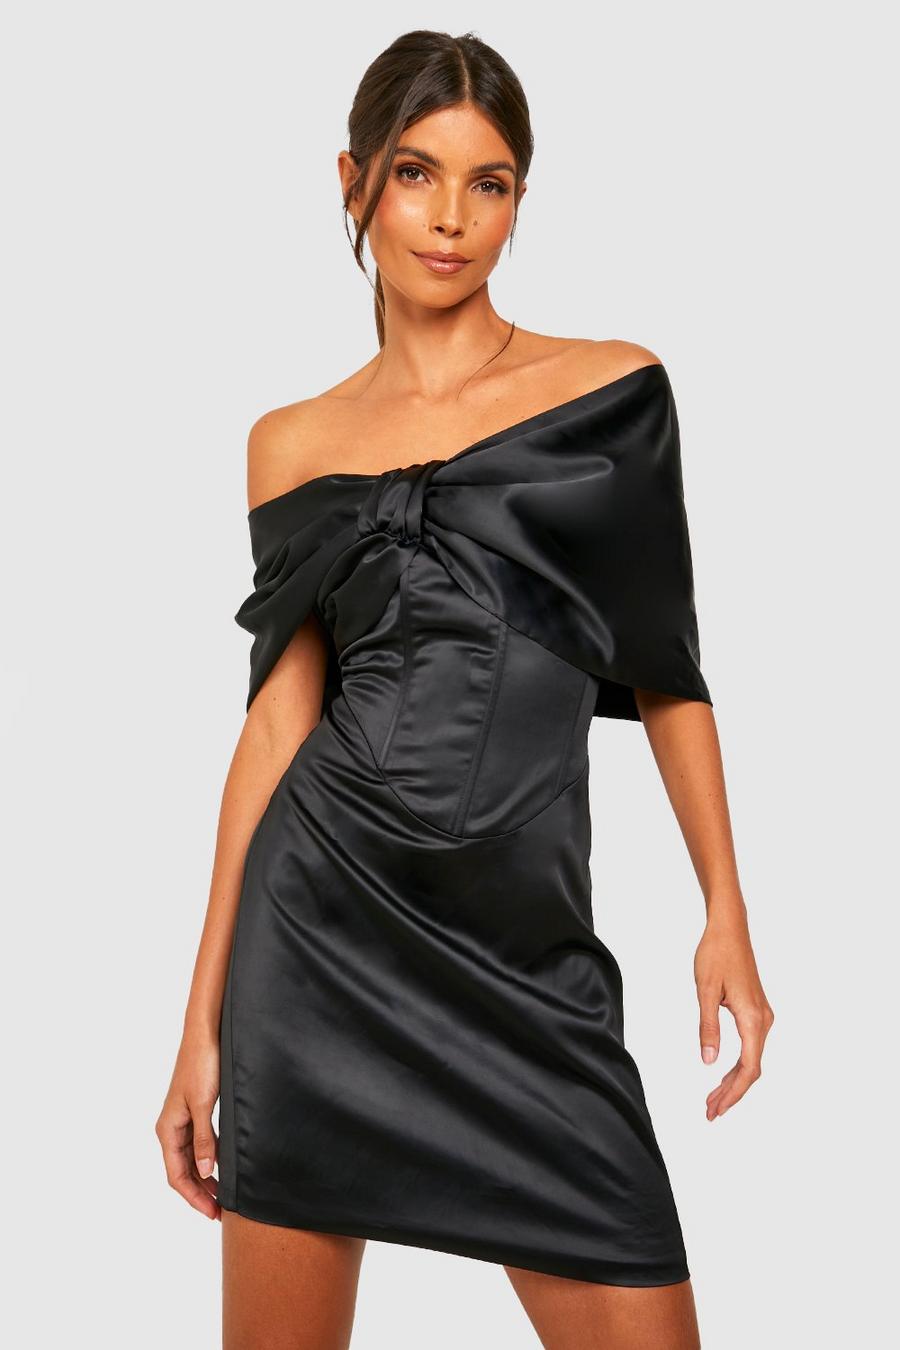 שחור nero שמלת סאטן בסגנון ברדו עם עיטור מחוך